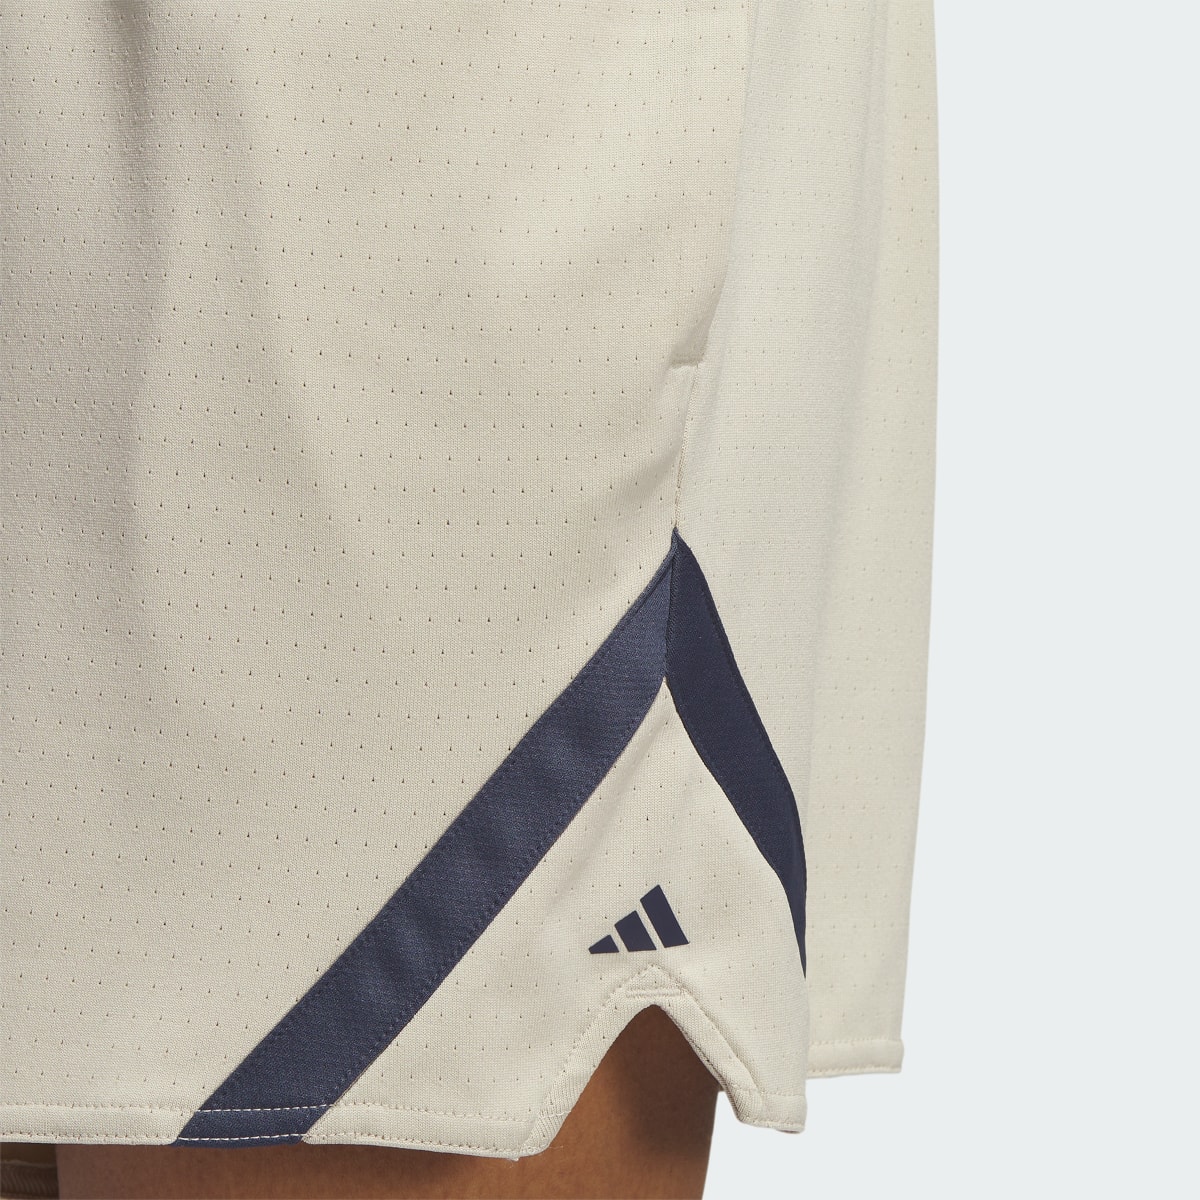 Adidas Select Basketball Shorts. 5